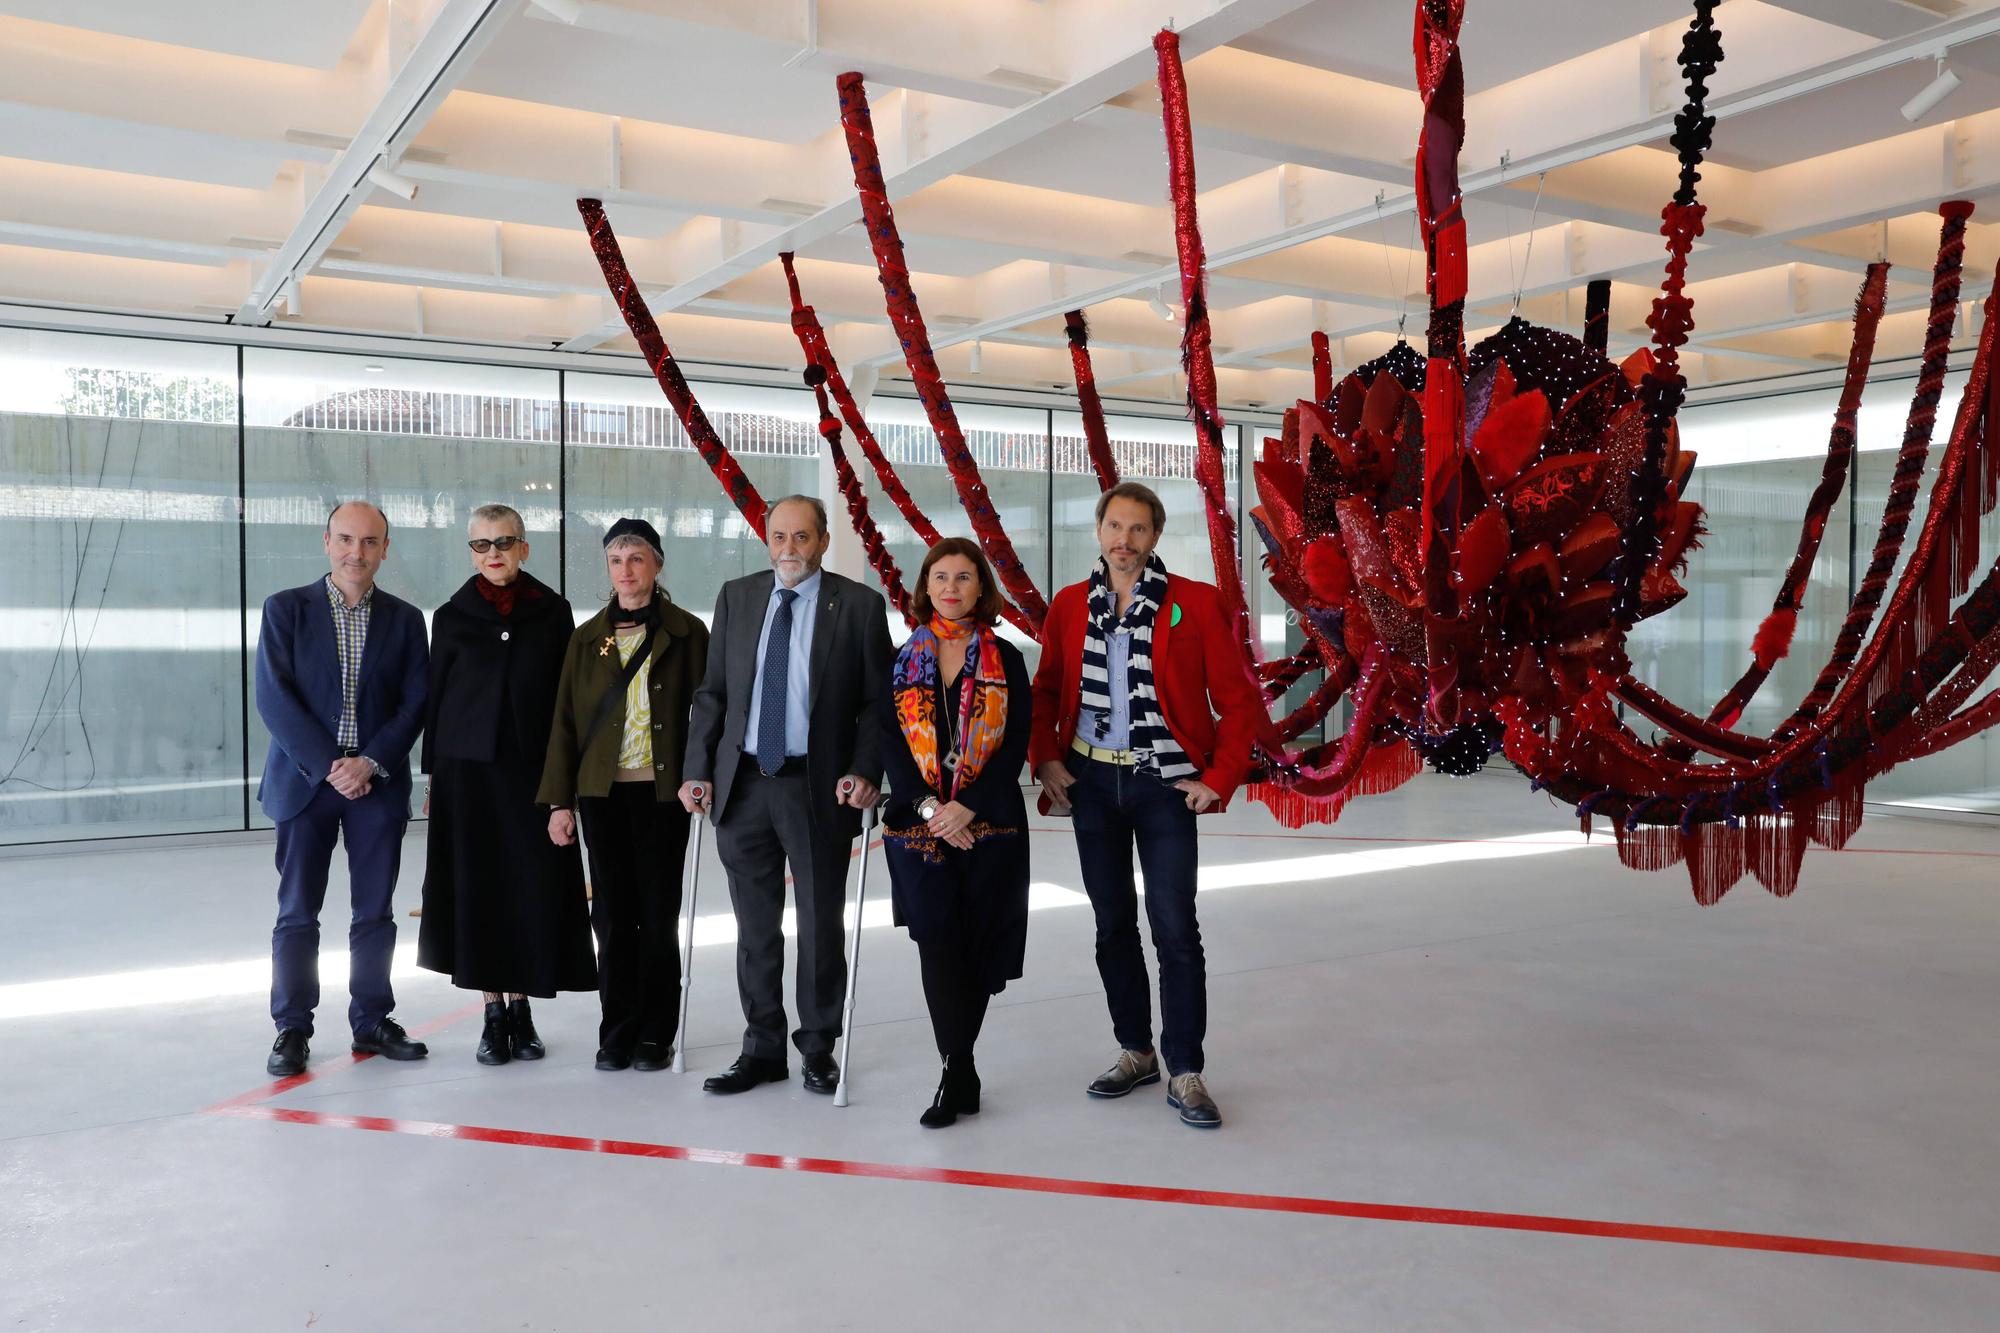 Inauguración de la exposición de la artista visual portuguesa Joana Vasconcelos en la Central Artística de Bueño.